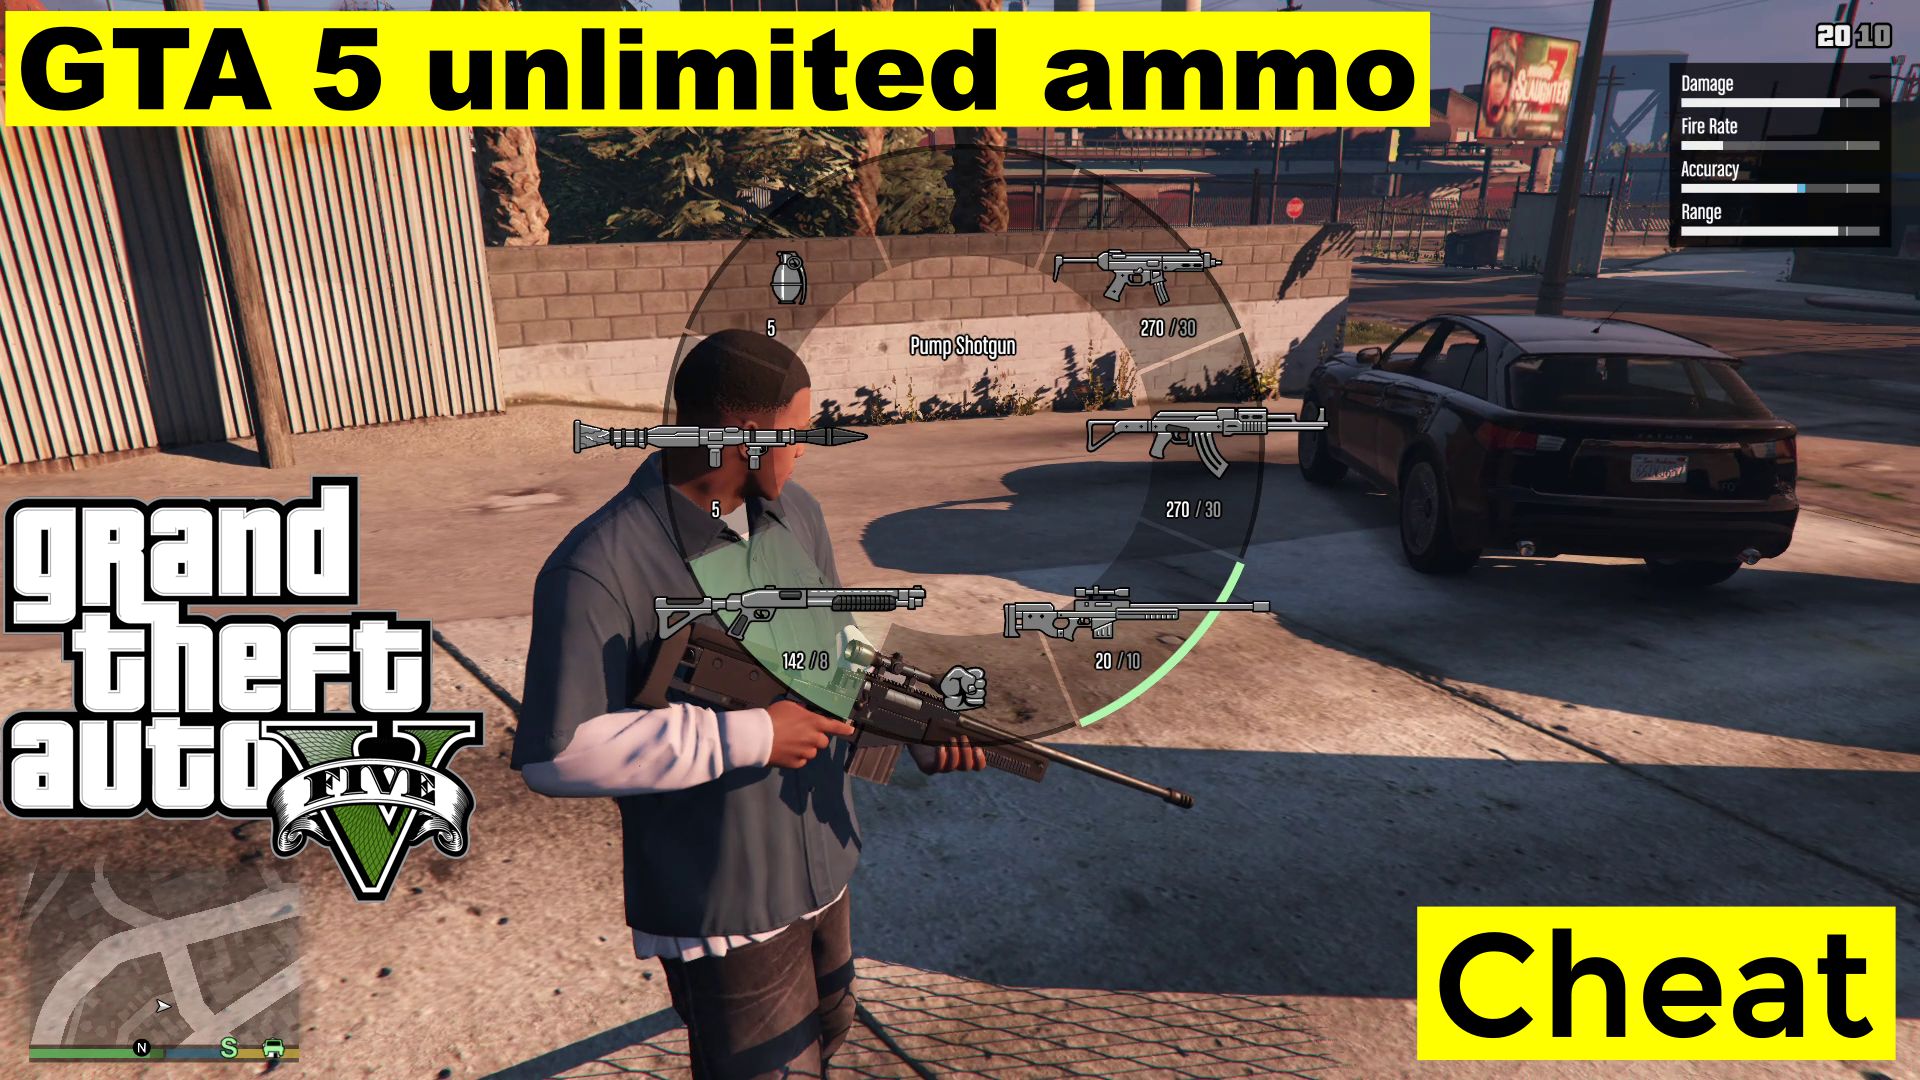 Cheat munizioni illimitate GTA 5 per PC, Xbox, PlayStation